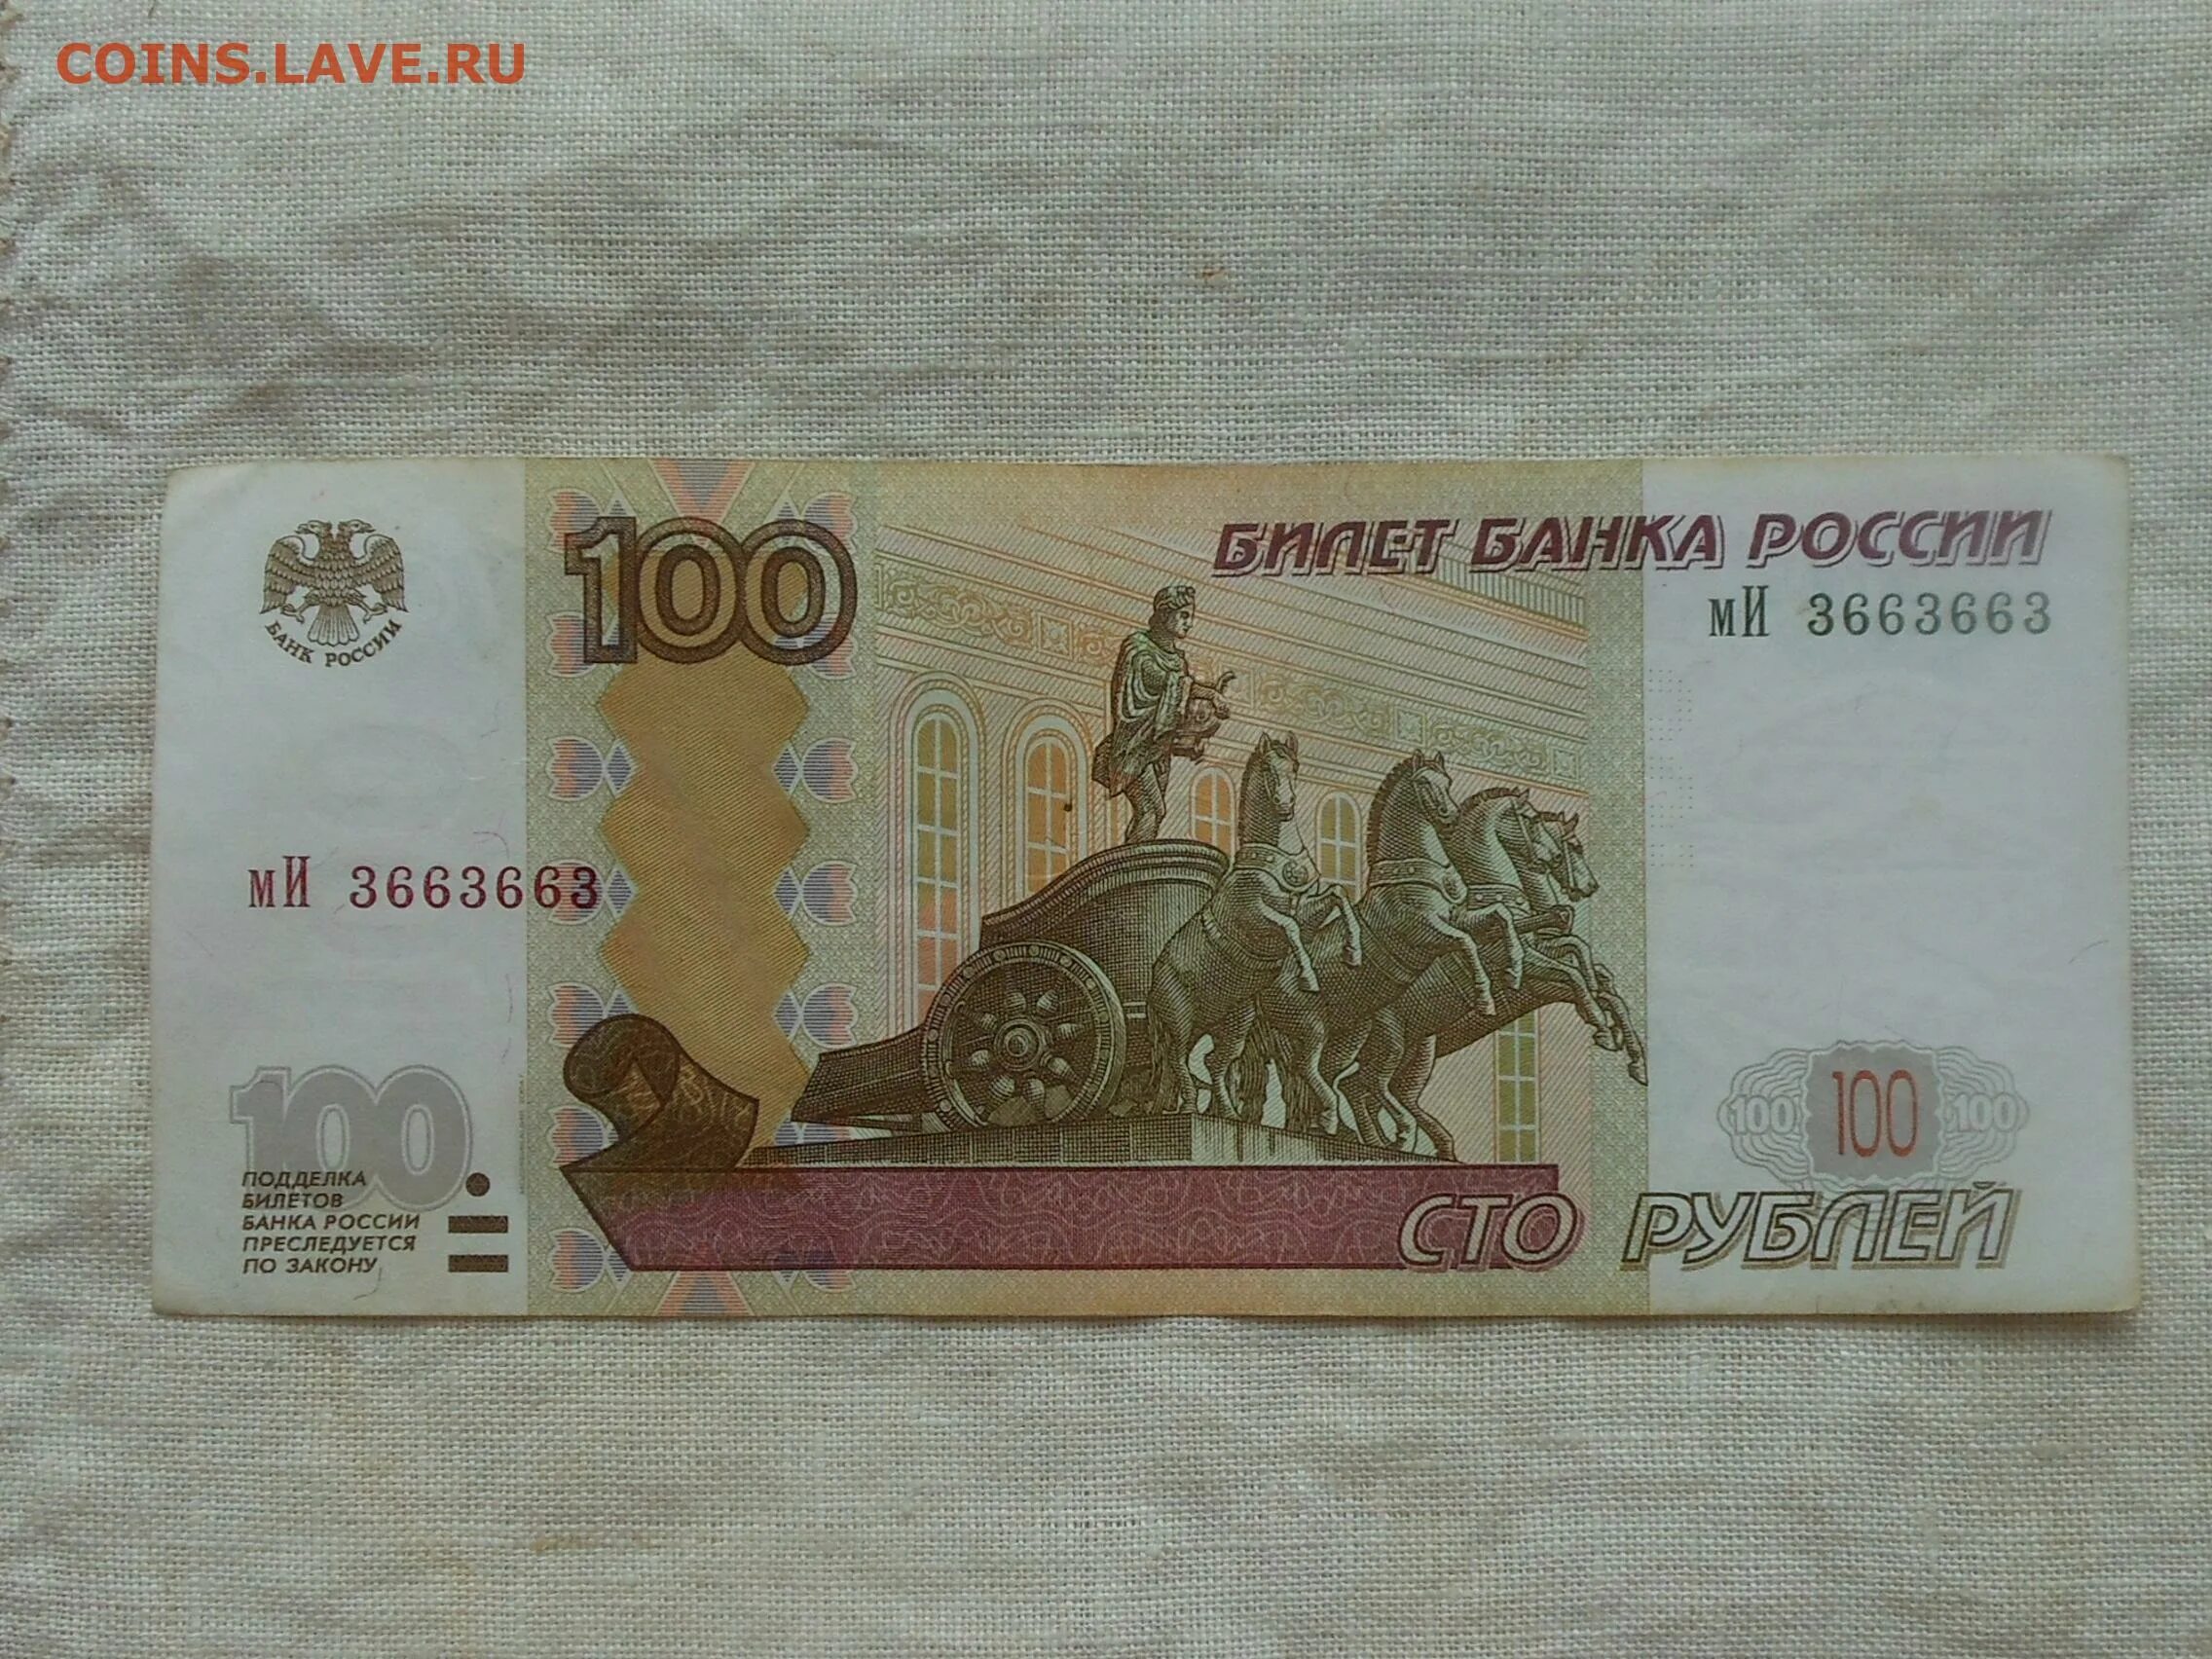 Где можно продать купюру. Рубли до 1997. Радар на банкнотах. Российский рубль до 1997.